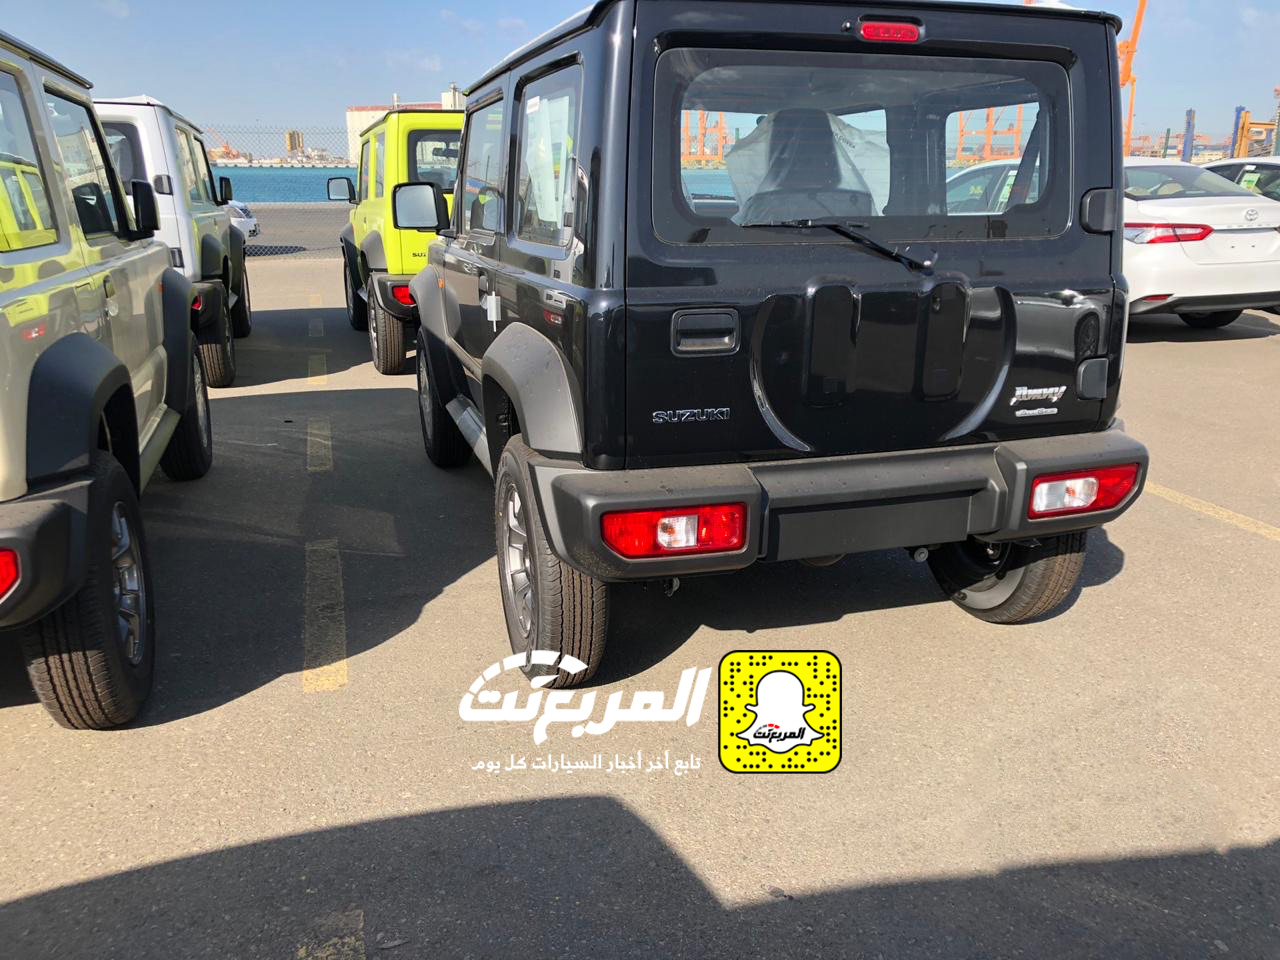 "بالصور" وصول سوزوكي جيمني 2019 الشكل الجديد الى السعودية + المواصفات Suzuki Jimny 4